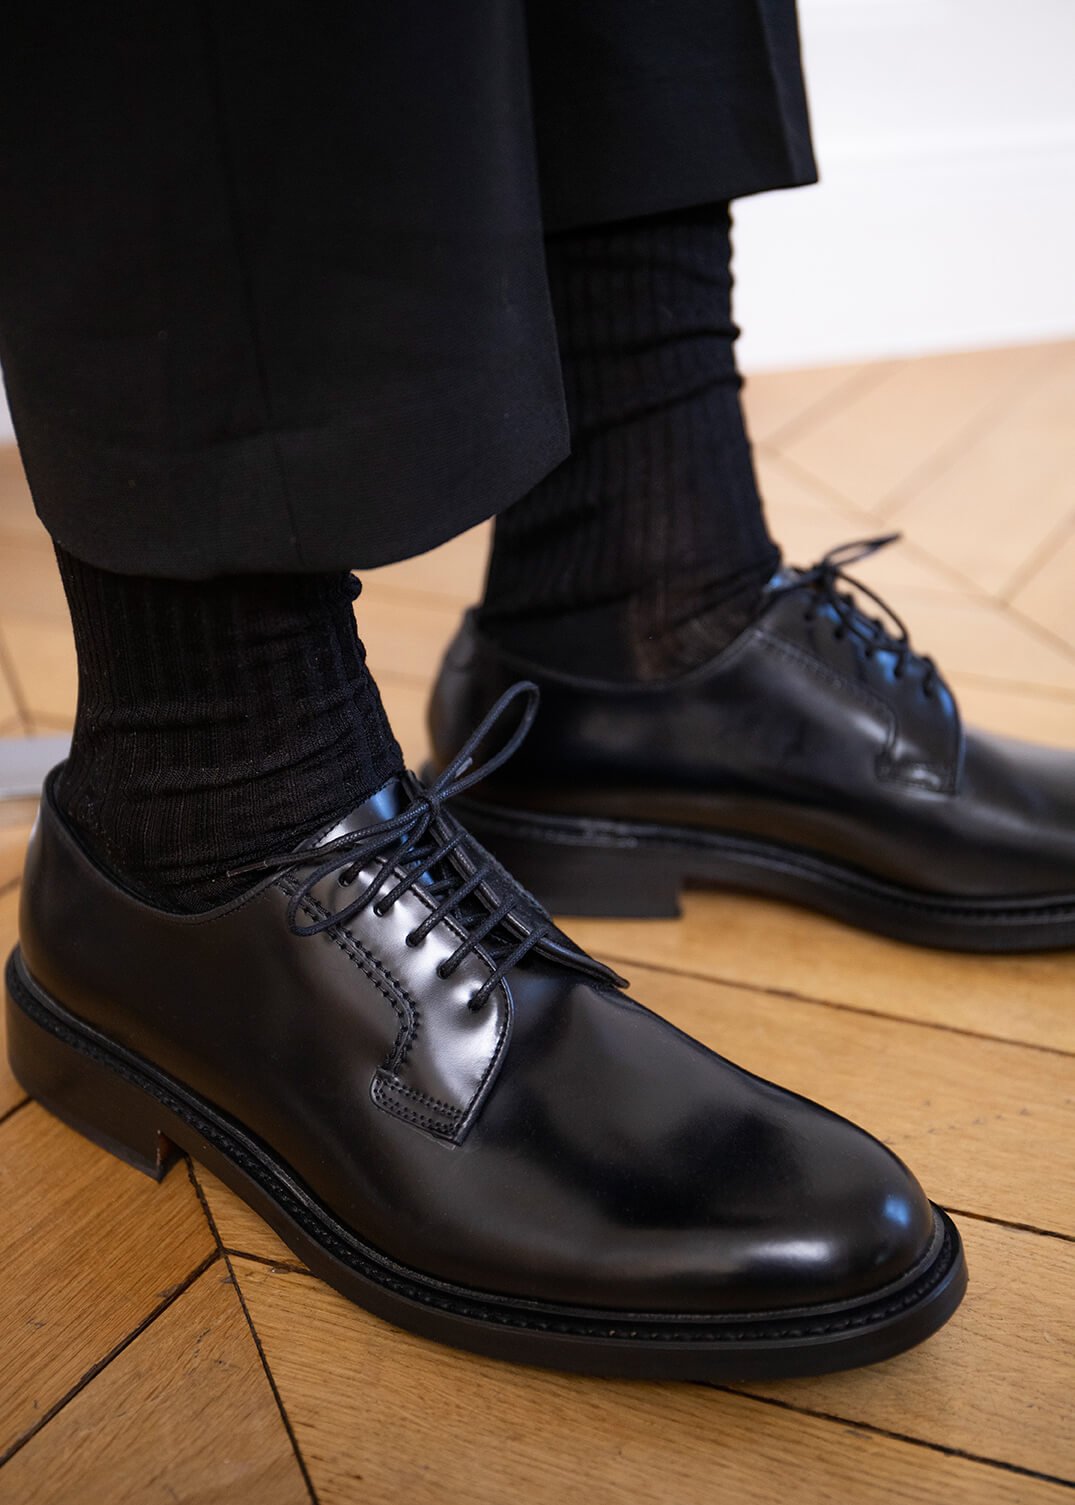 Chaussures Boss derby en cuir - Transfert Man